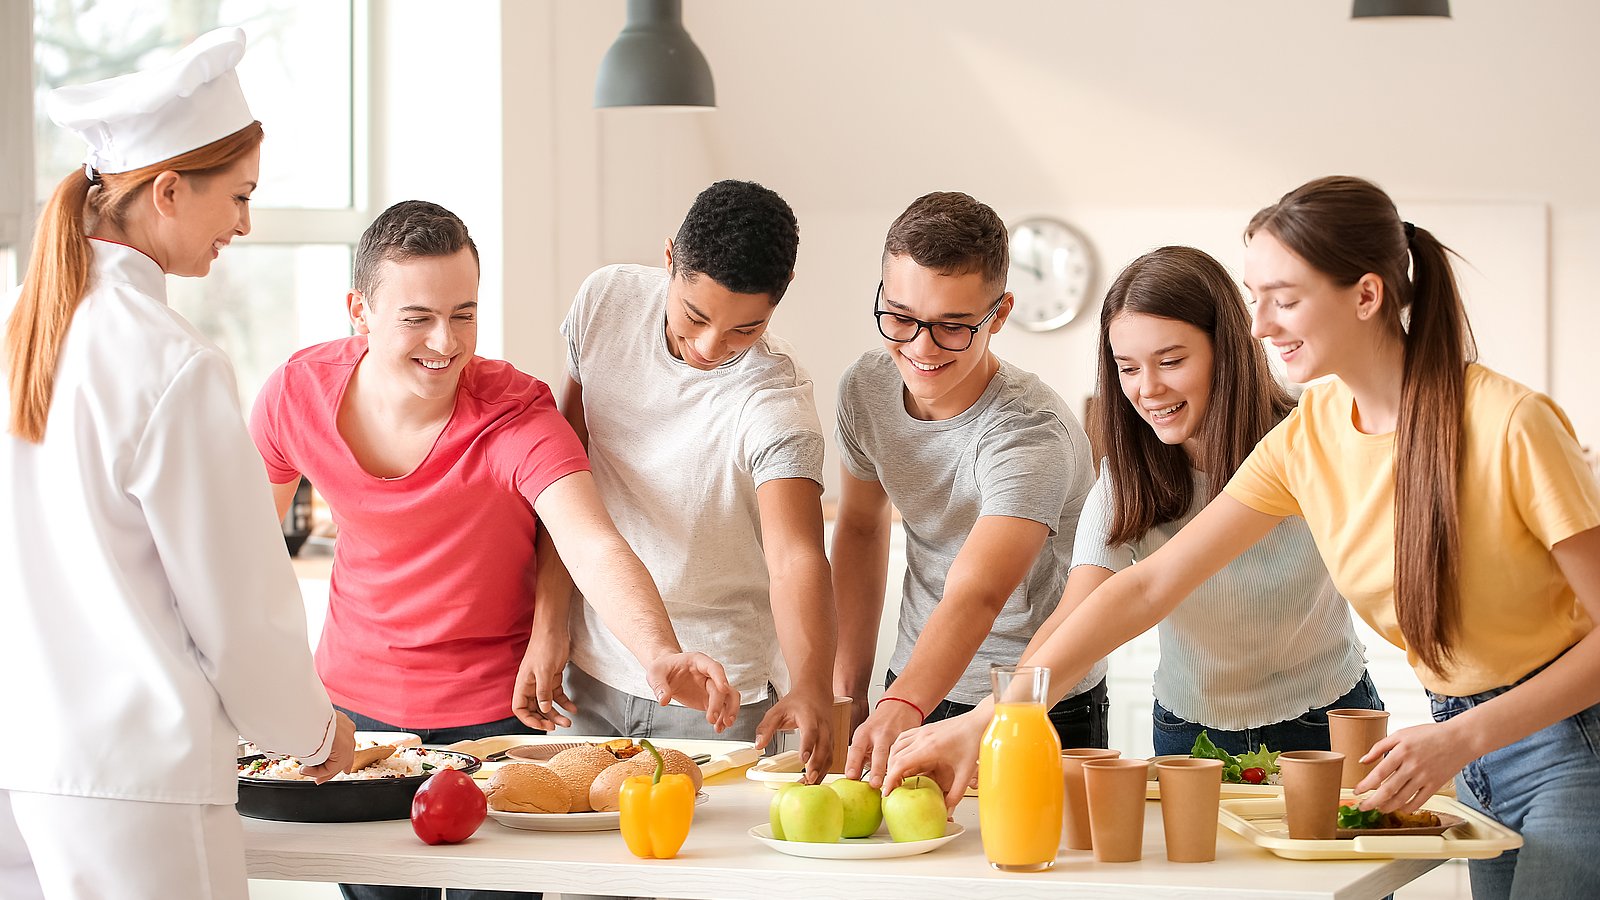 Auf einem weißen Tisch sind Speisen, Obst und Gemüse präsentiert. Davor stehen fünf junge Erwachsene mit ihren Tabletts, auf denen Essen steht. Sie greifen alle gemeinsam nach einem Teller mit grünen Äpfeln. 